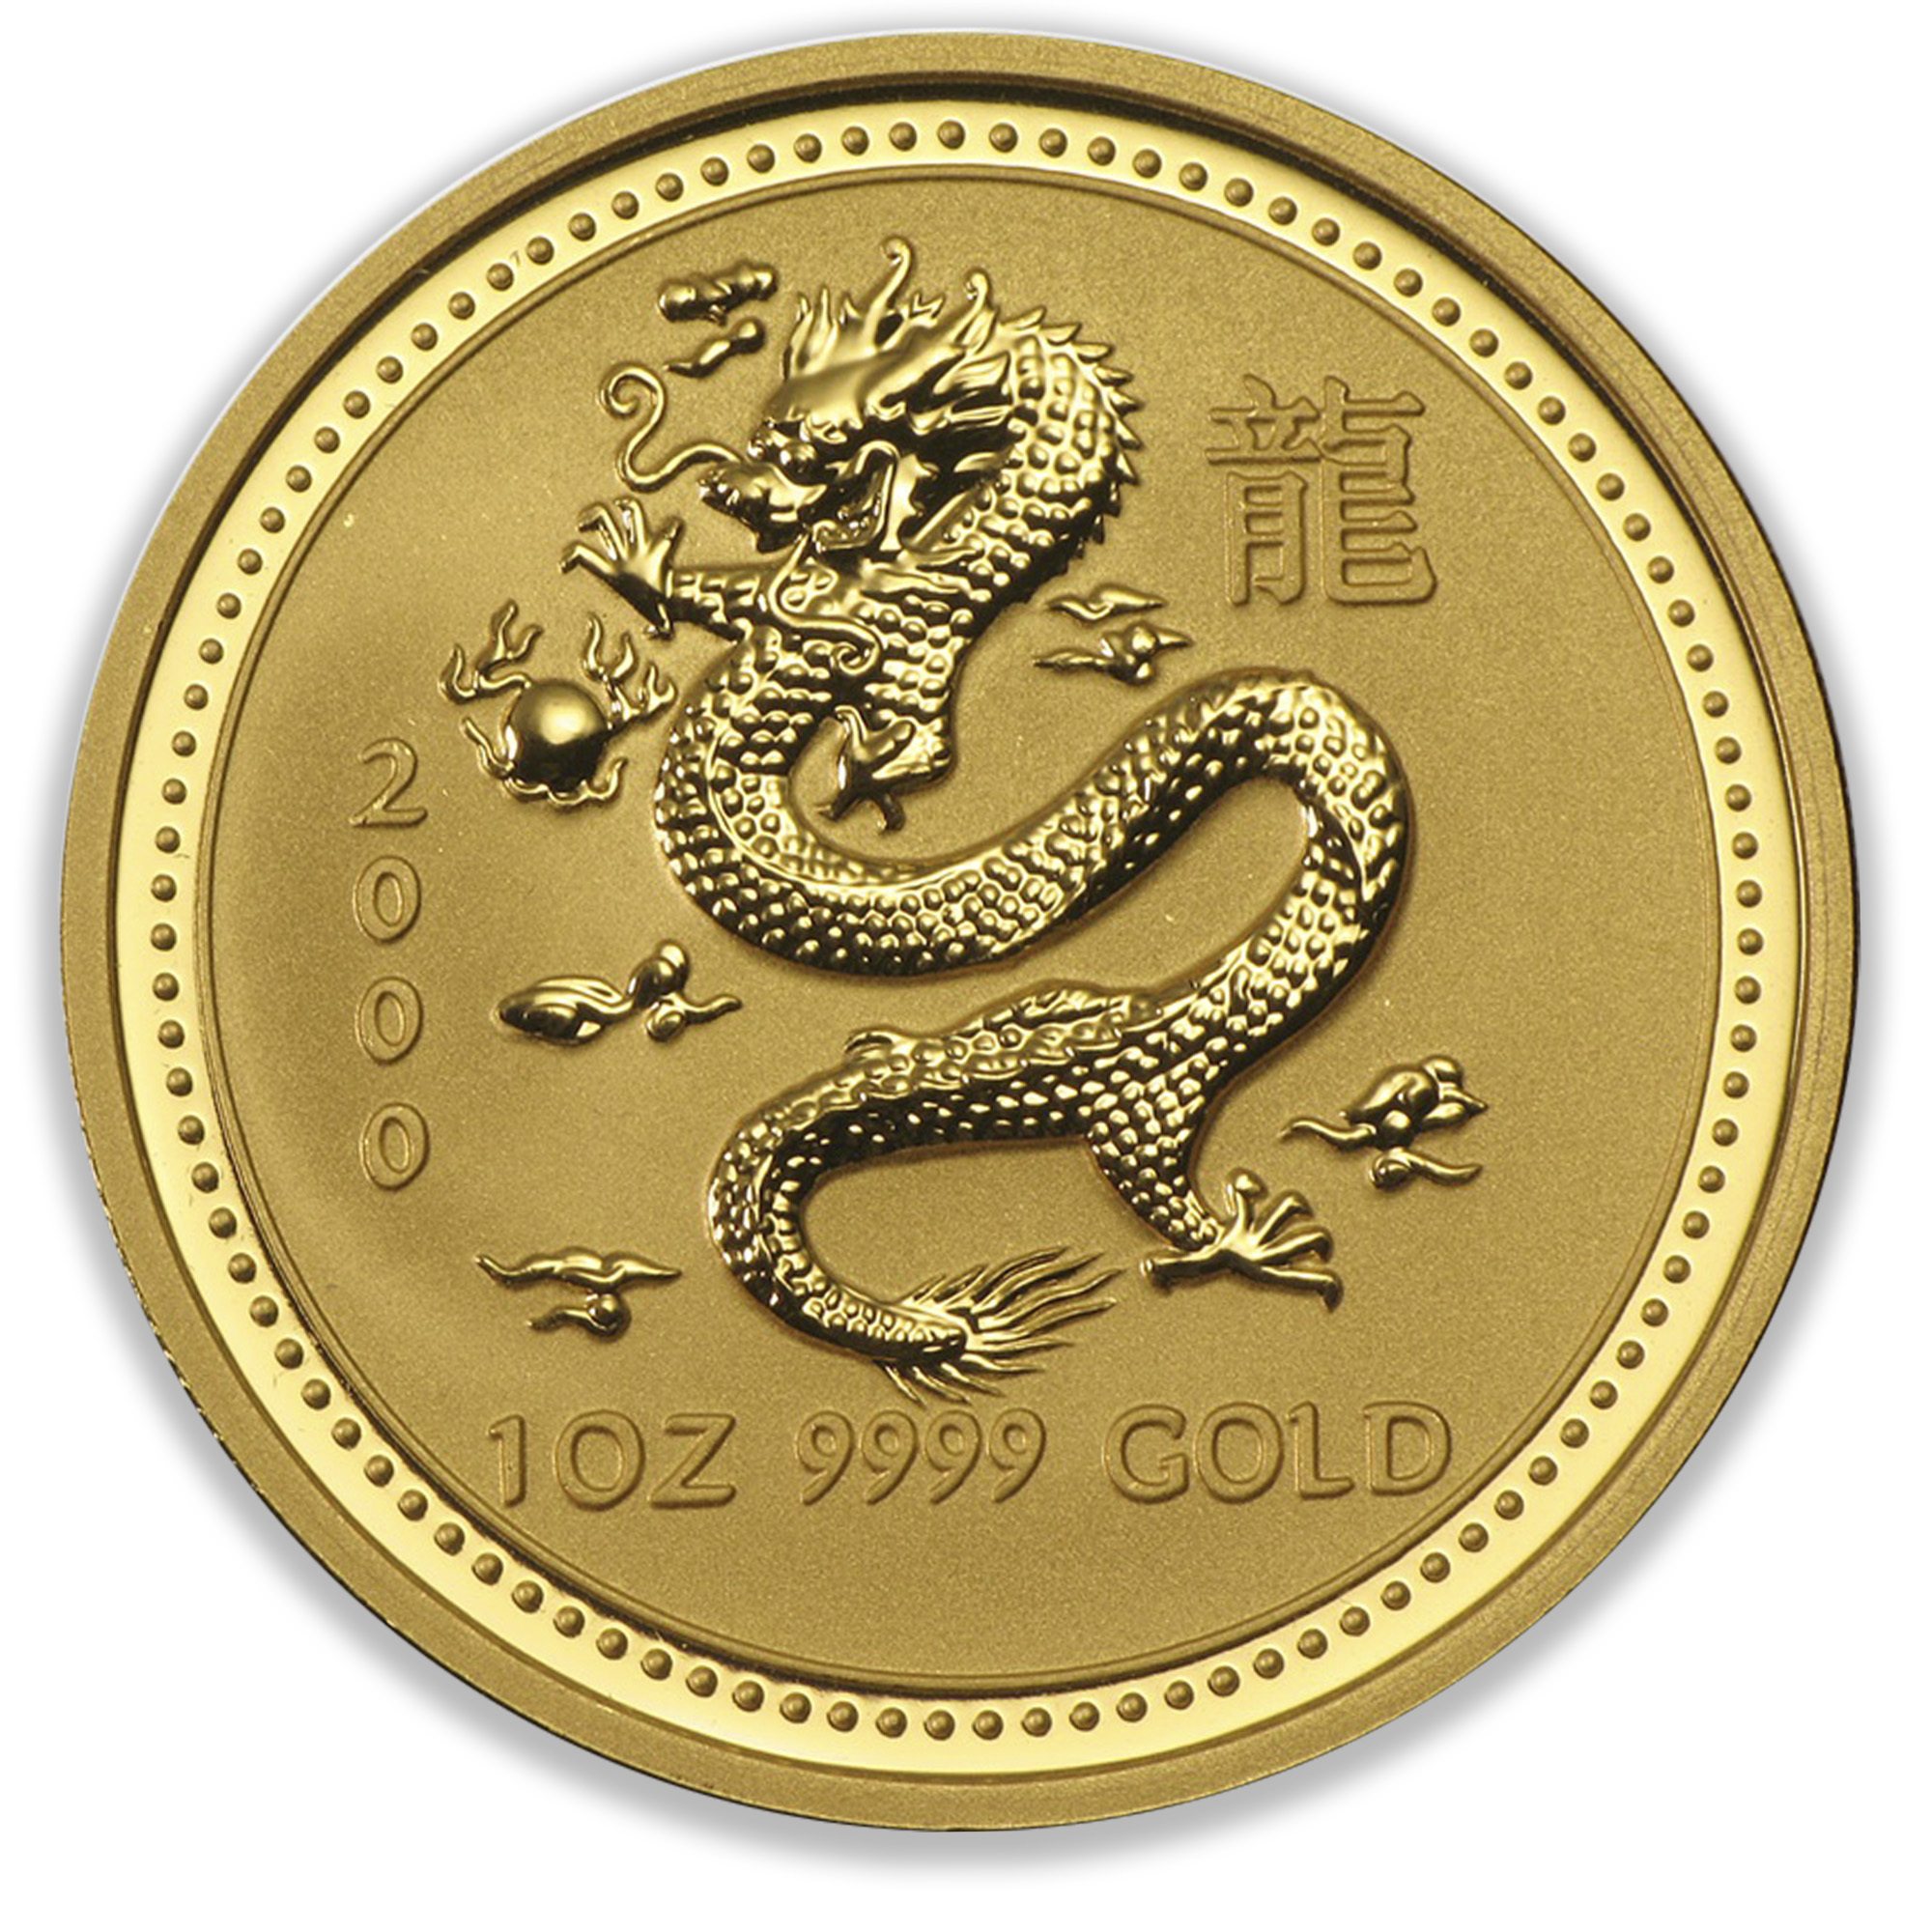 2000 1oz Perth Mint Gold Lunar Dragon Coin Series 1